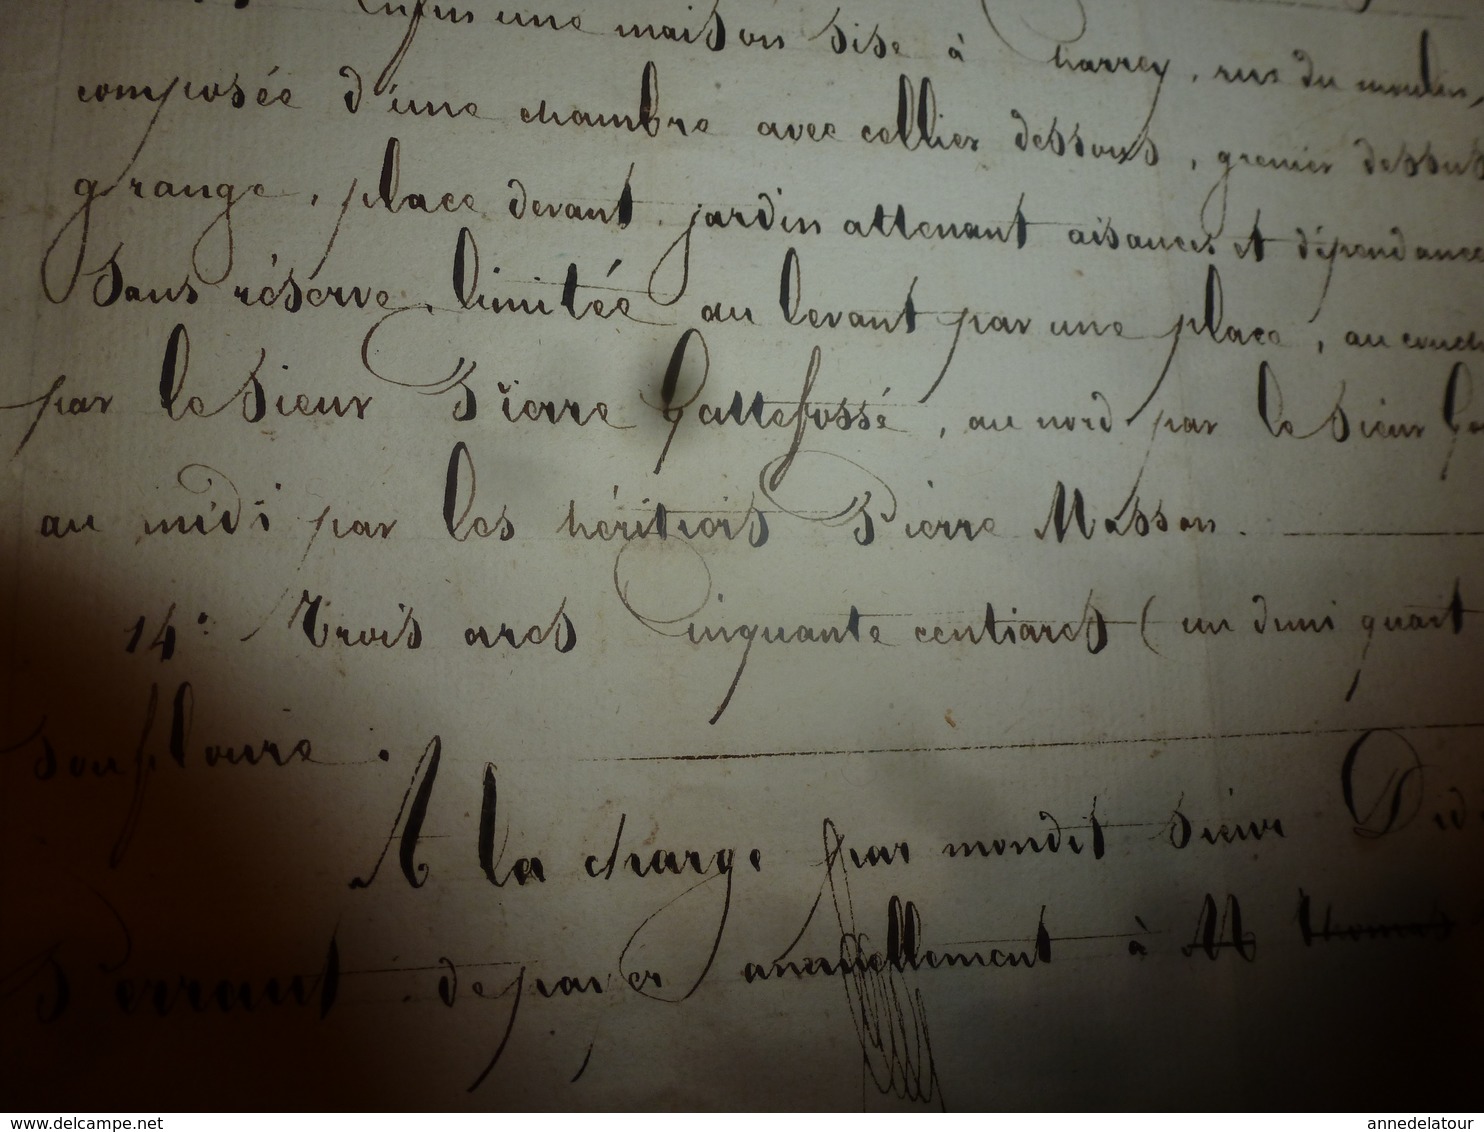 1835 Important manuscrit notarié avec cachets concerne Donation et Partage entre enfants PERRAULT